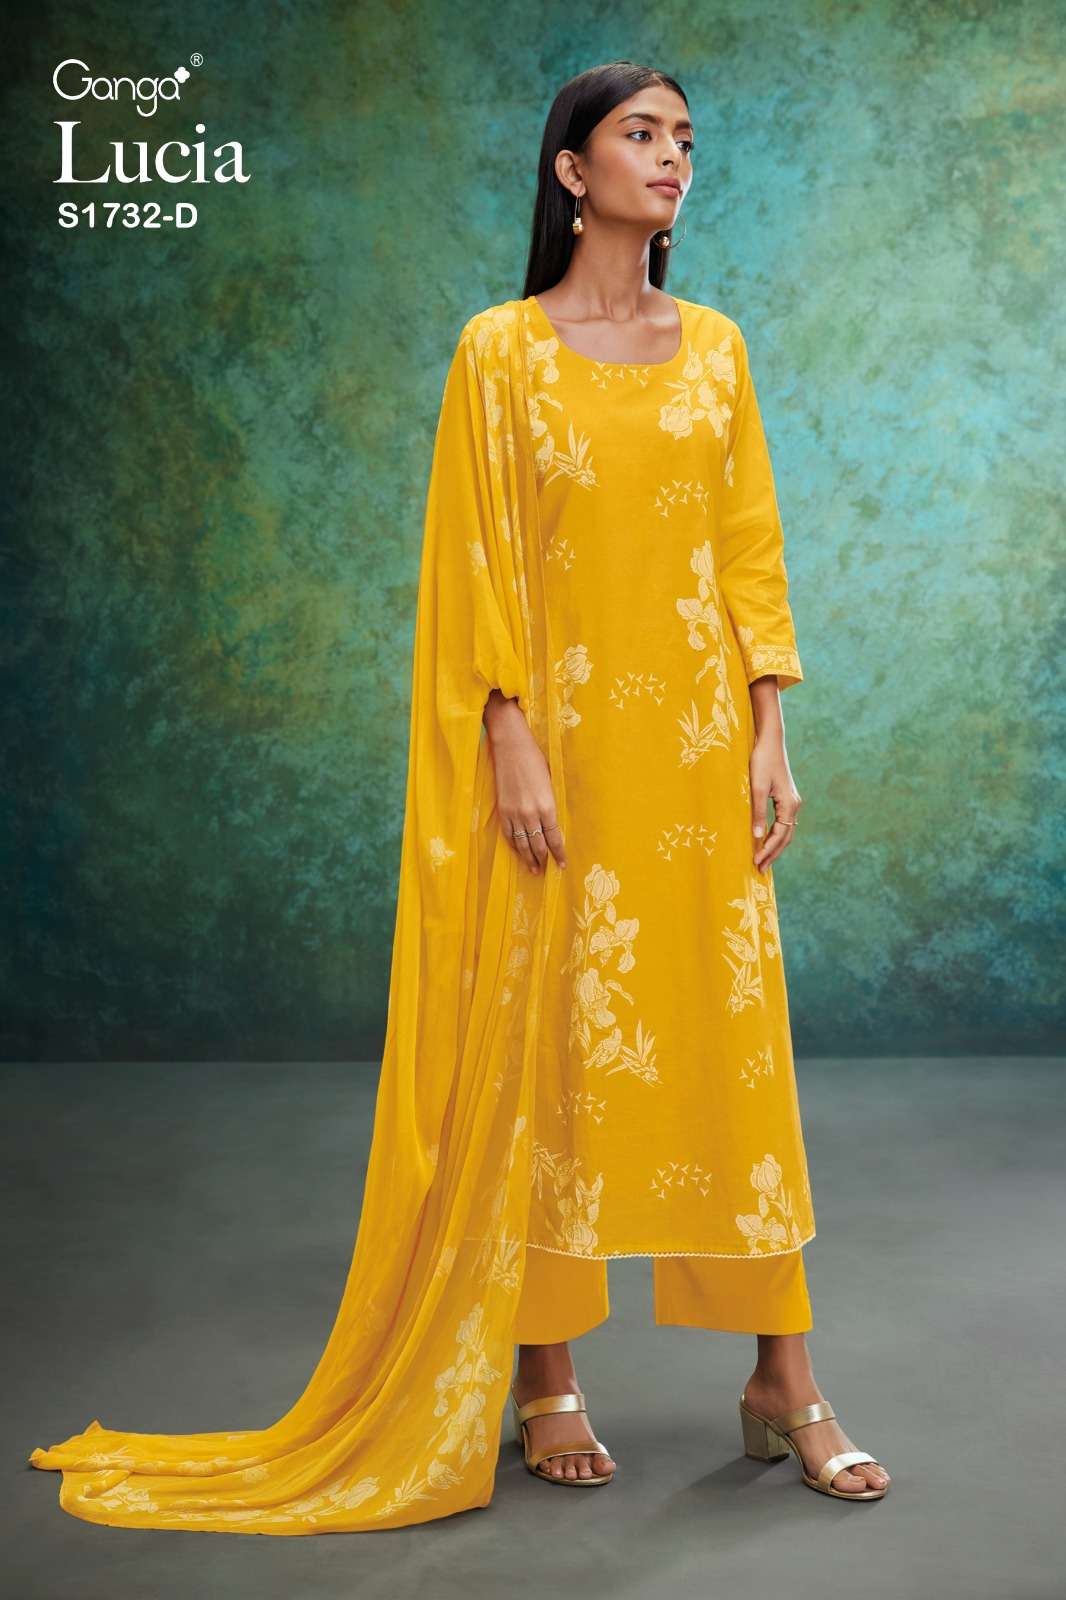 ganga lucia 1732 cotton yellow designer printed salwar kameez wholesale price surat